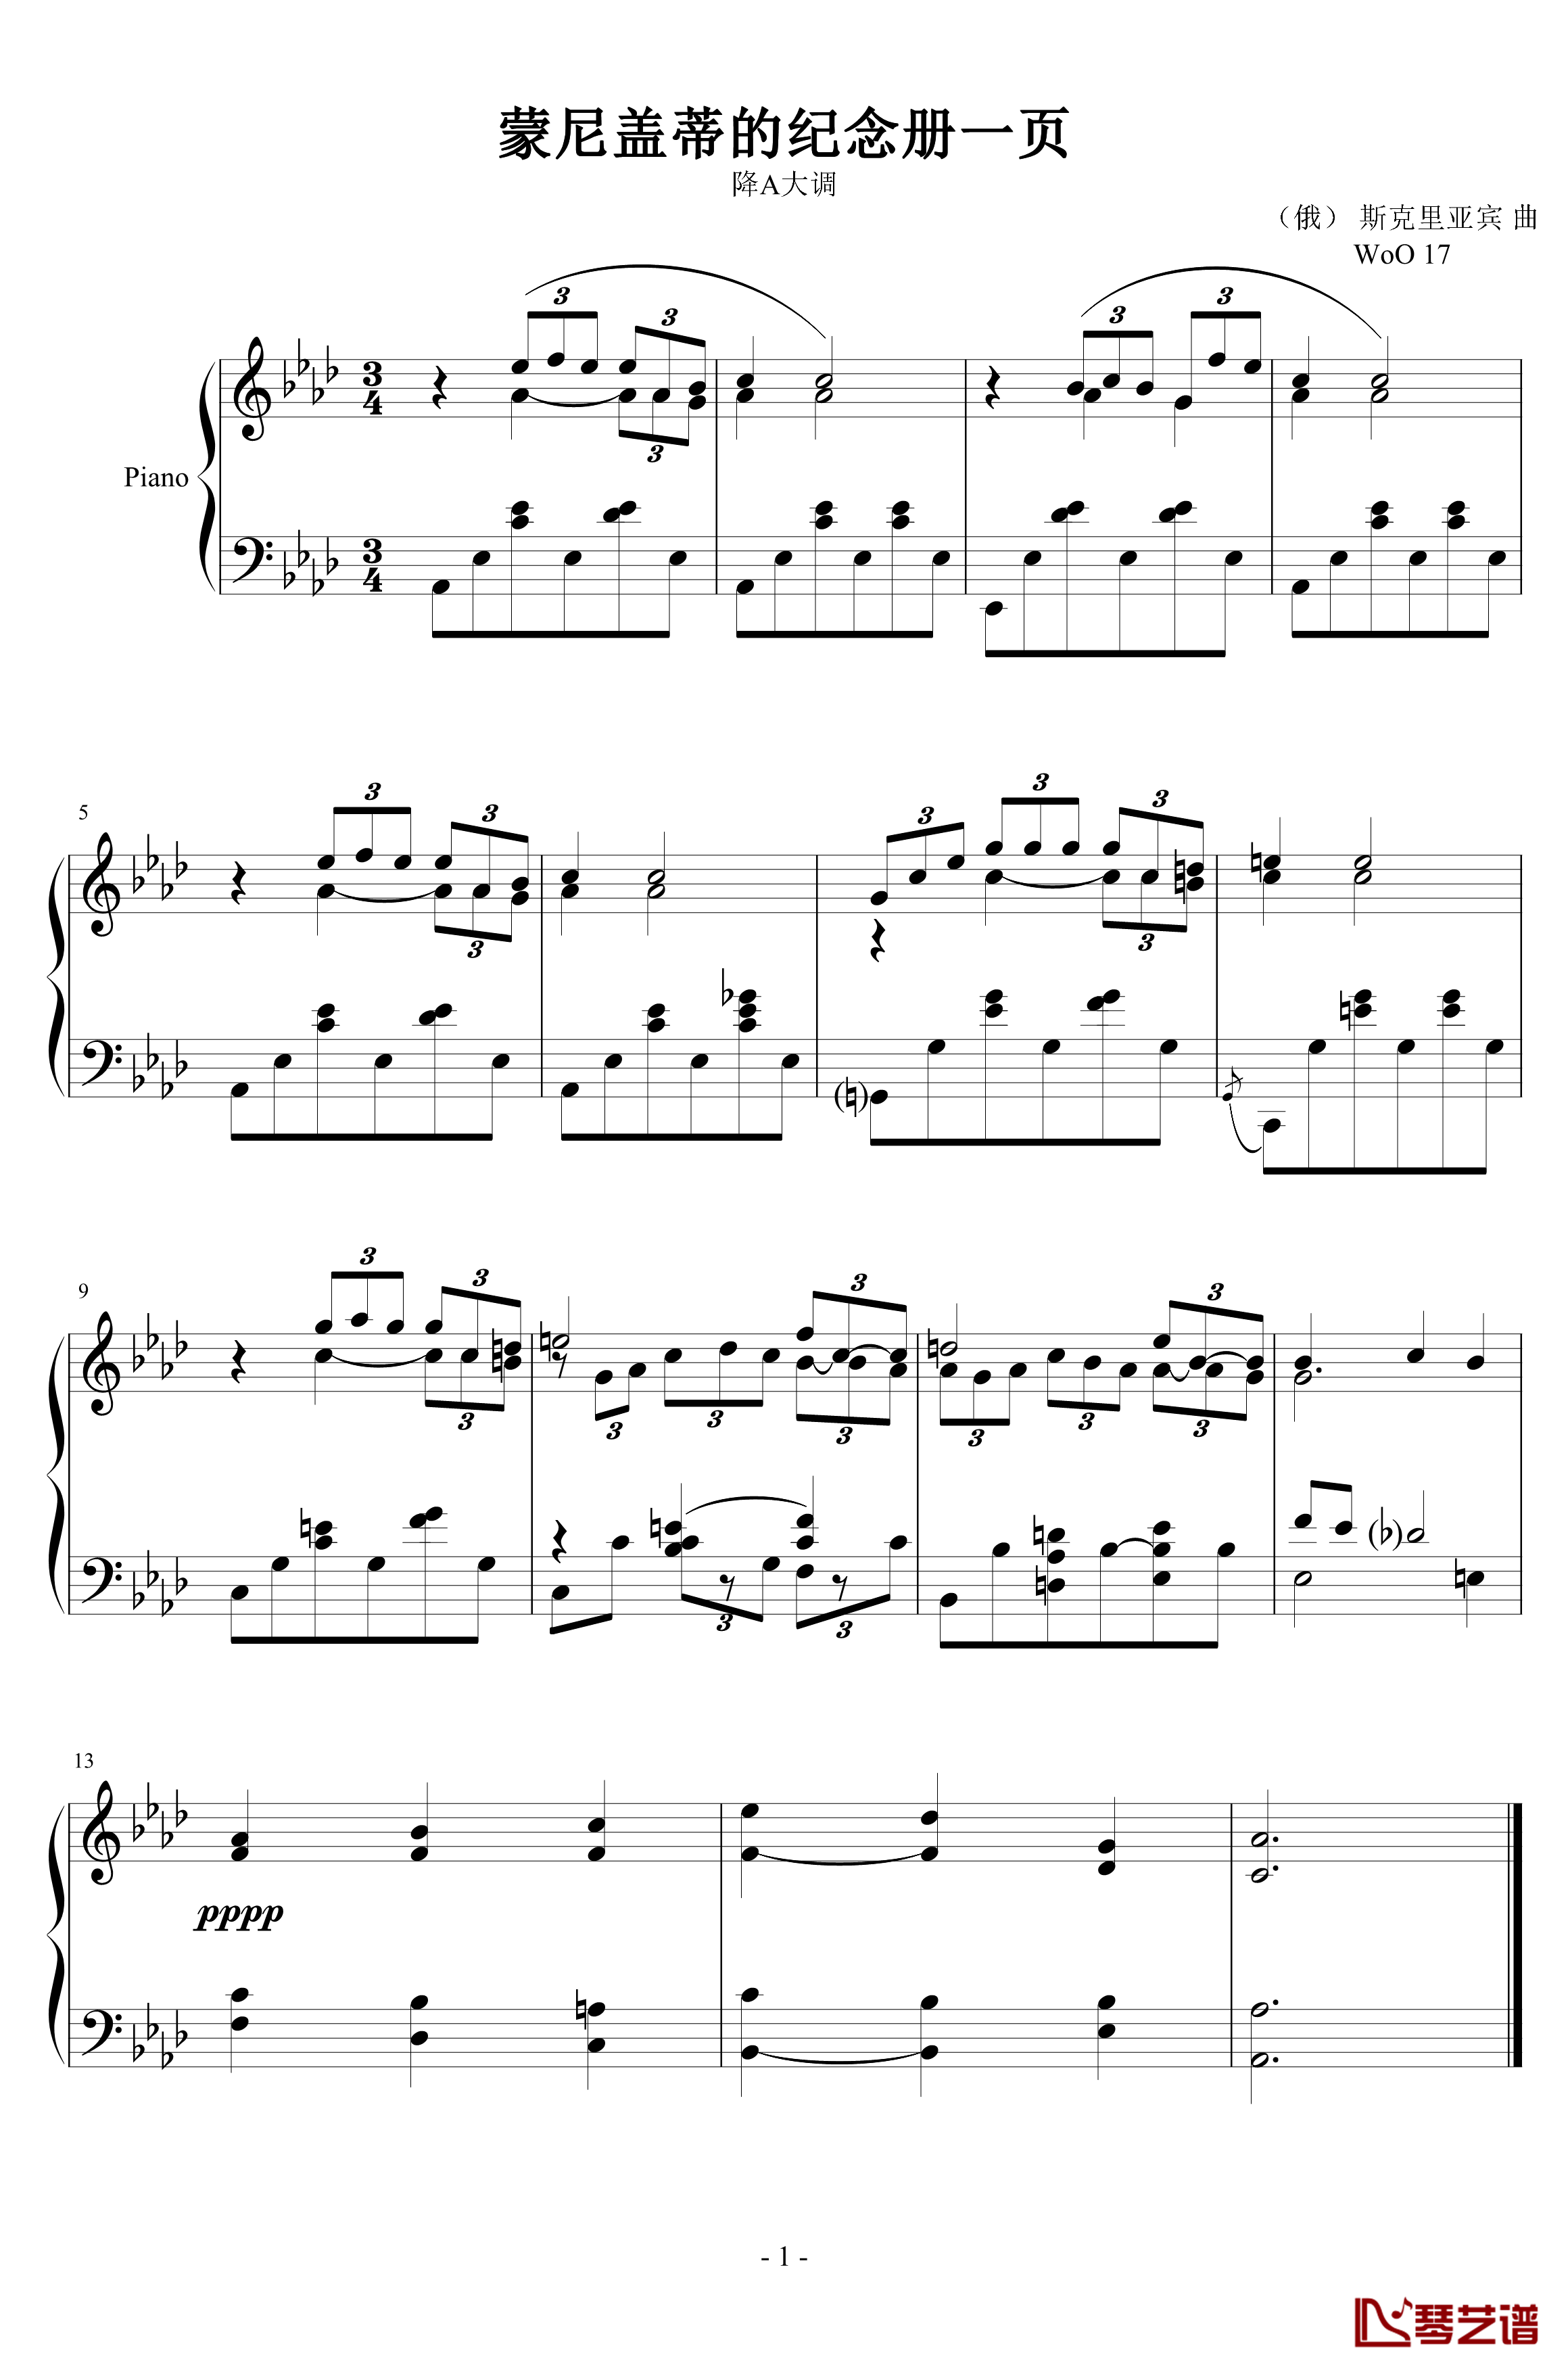 纪念册的一页钢琴谱-降A大调-斯克里亚宾1